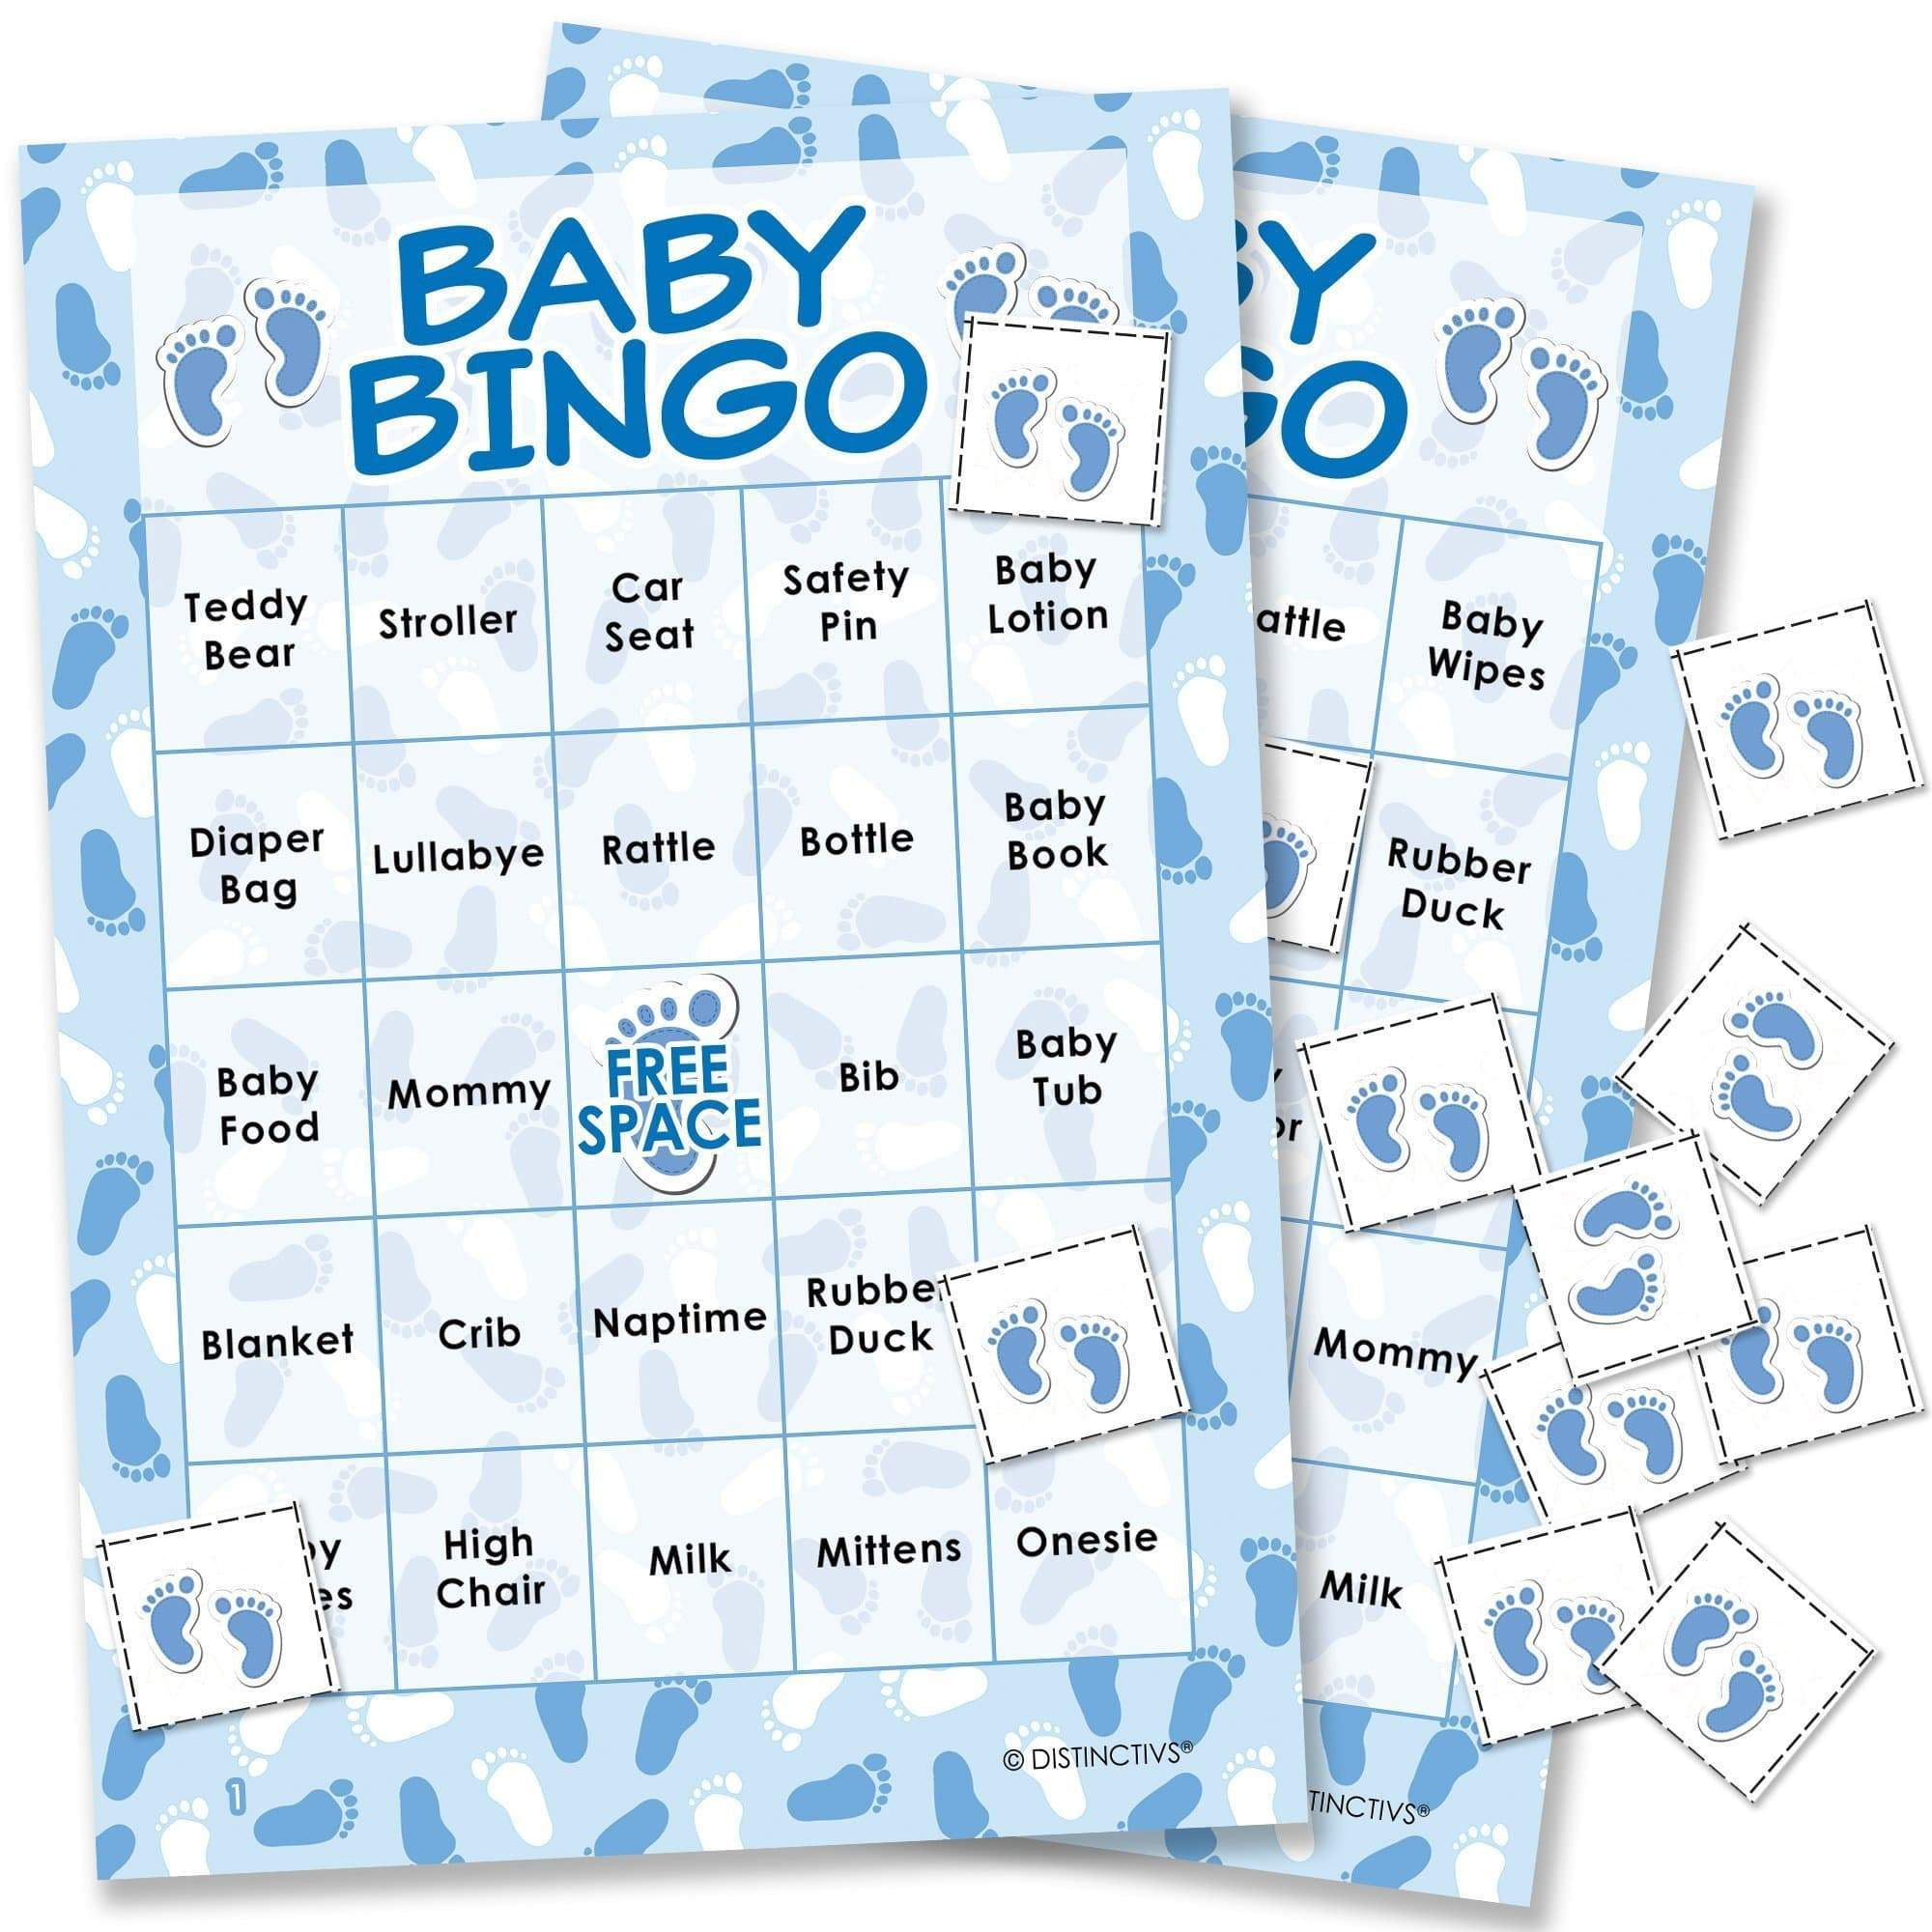 Bingo bingo baby i love you